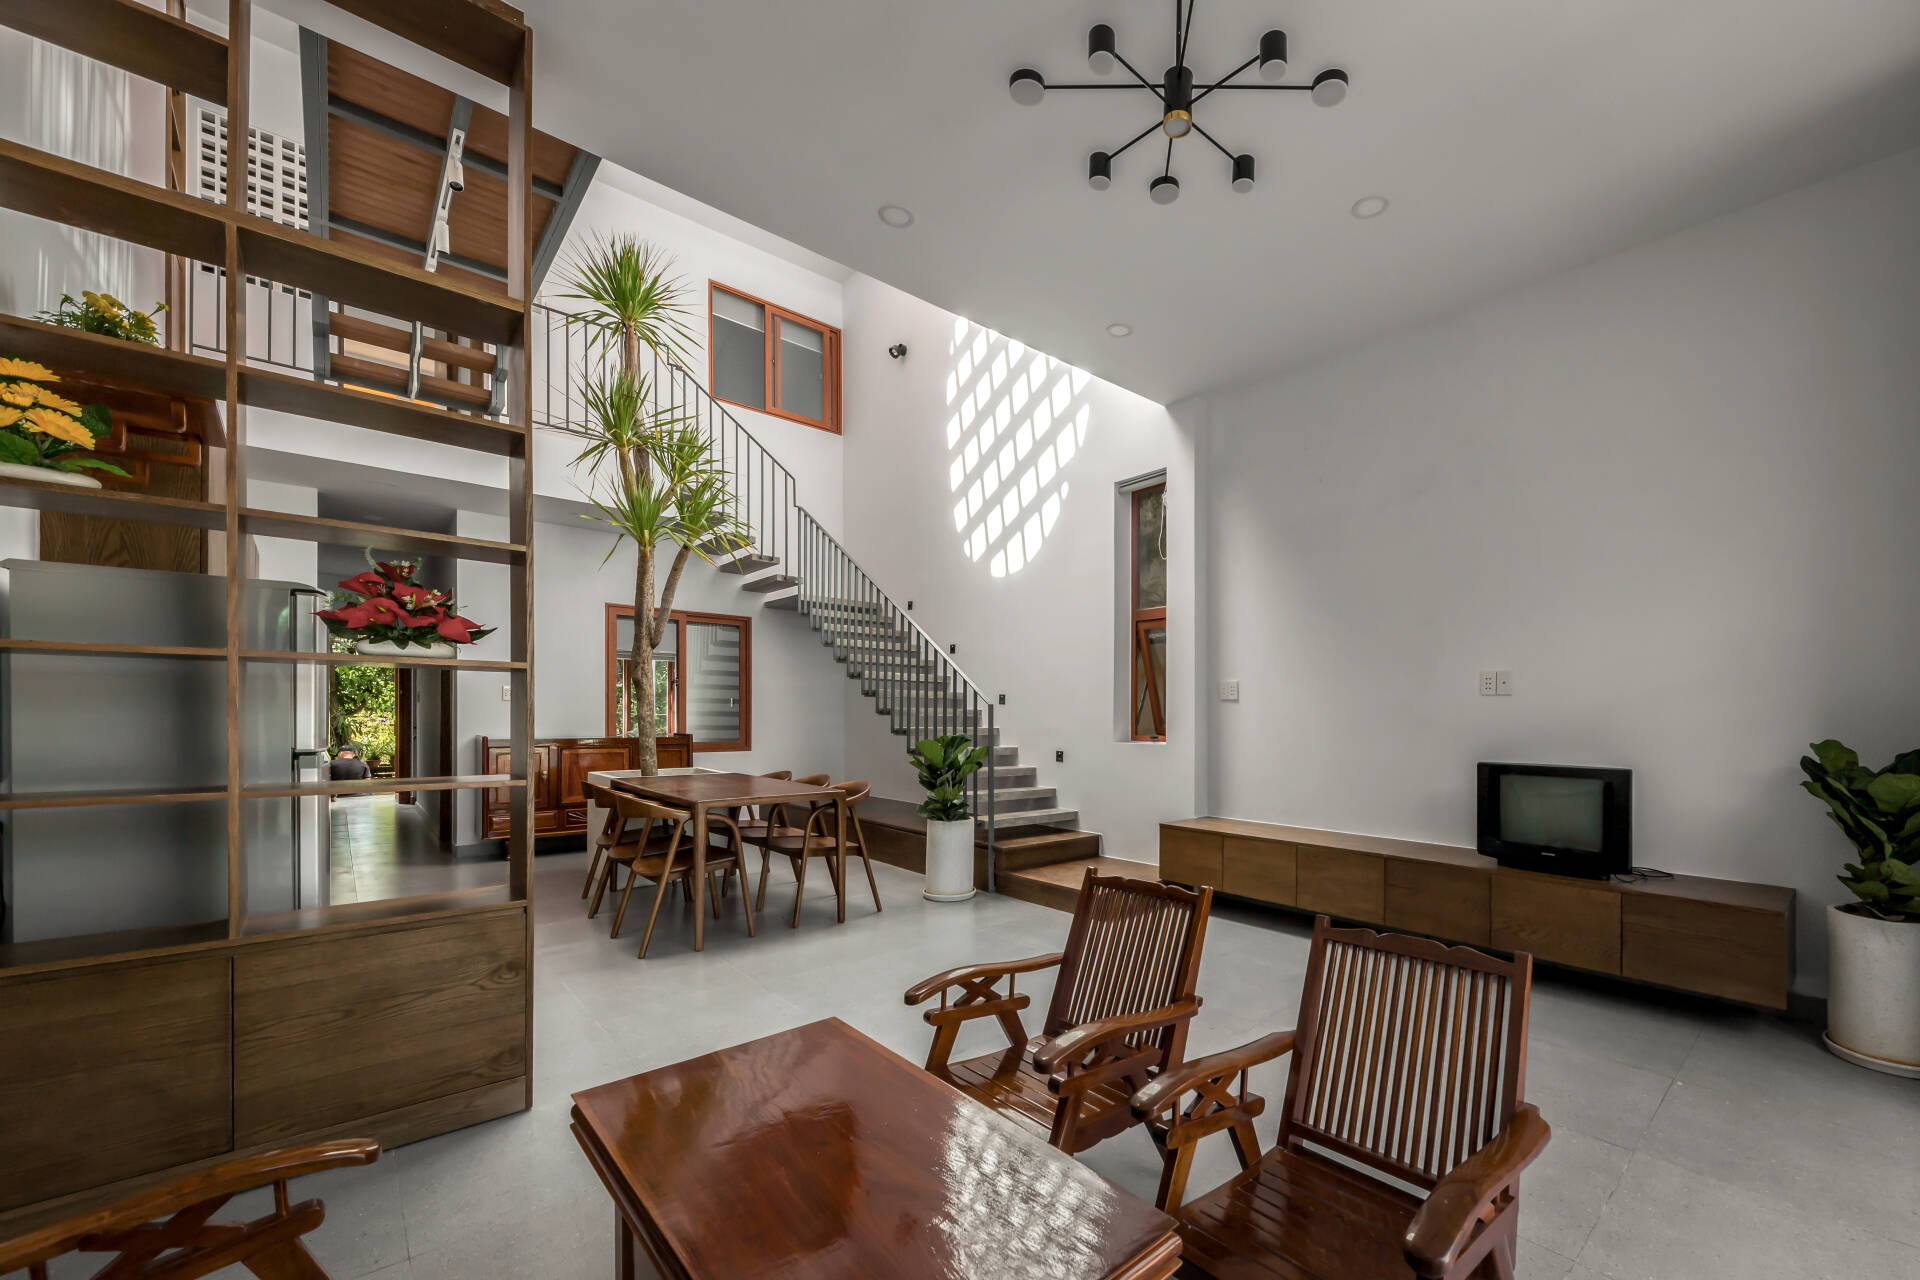 Không gian sinh hoạt chính gồm phòng khách, bếp và khu ăn uống được thiết kế mở, liền mạch

